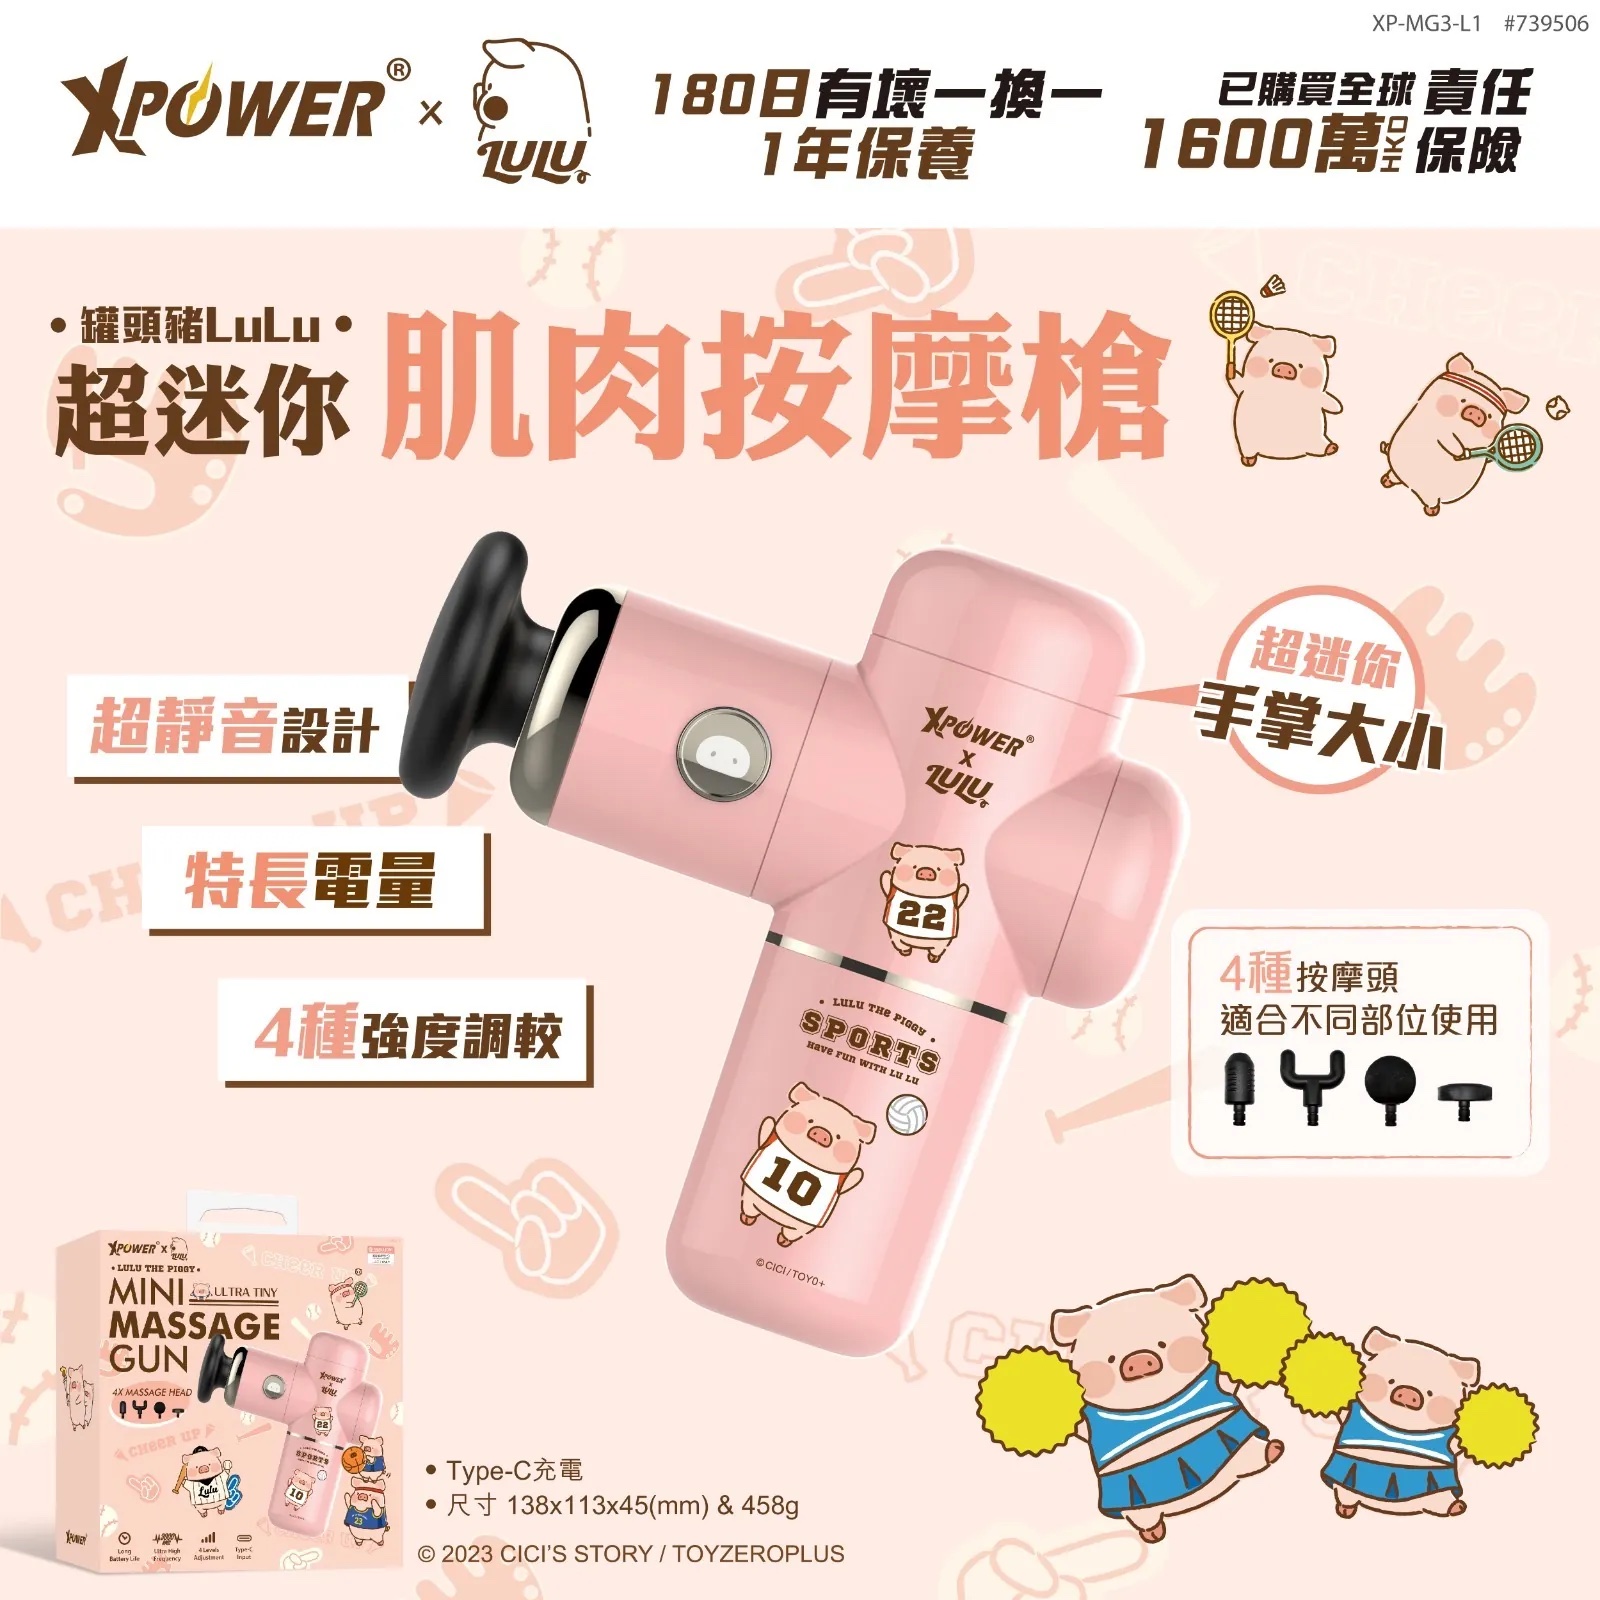 香港正品代购 xpower 罐头抽水猪LuLu超迷你按摩枪筋膜枪送女友